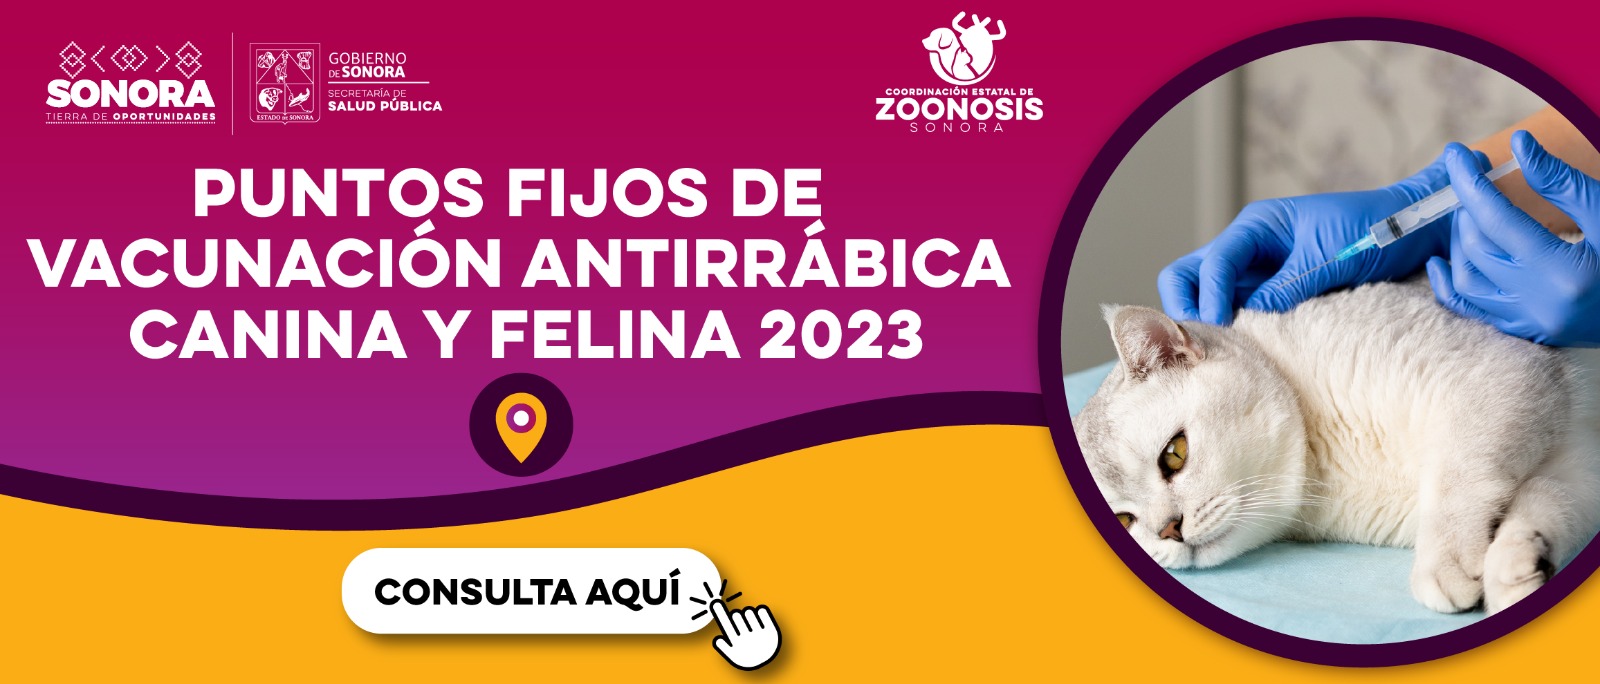 puntos_fijos_vacunacion_antirrabica_2023